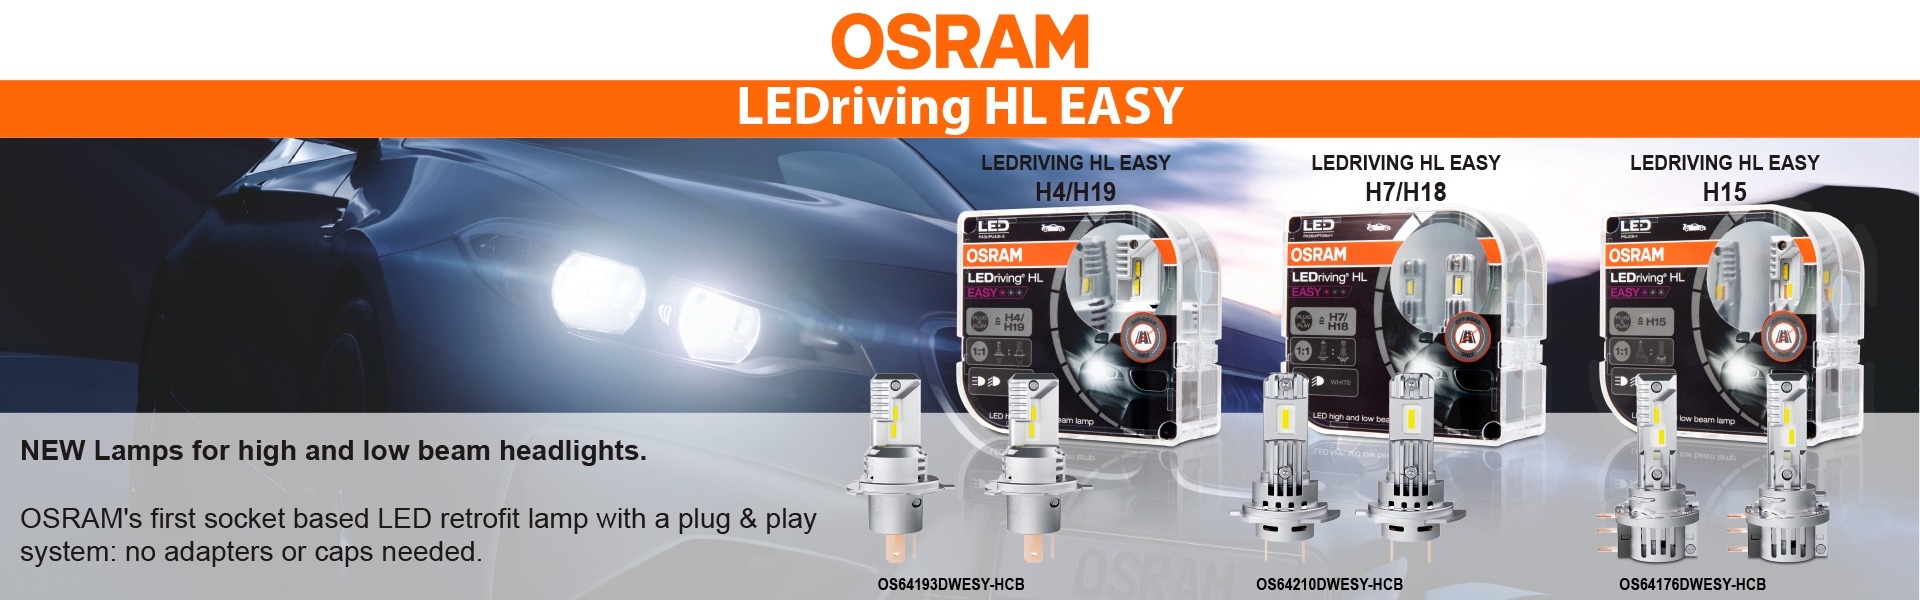 OSRAM LEDriving HL EASY